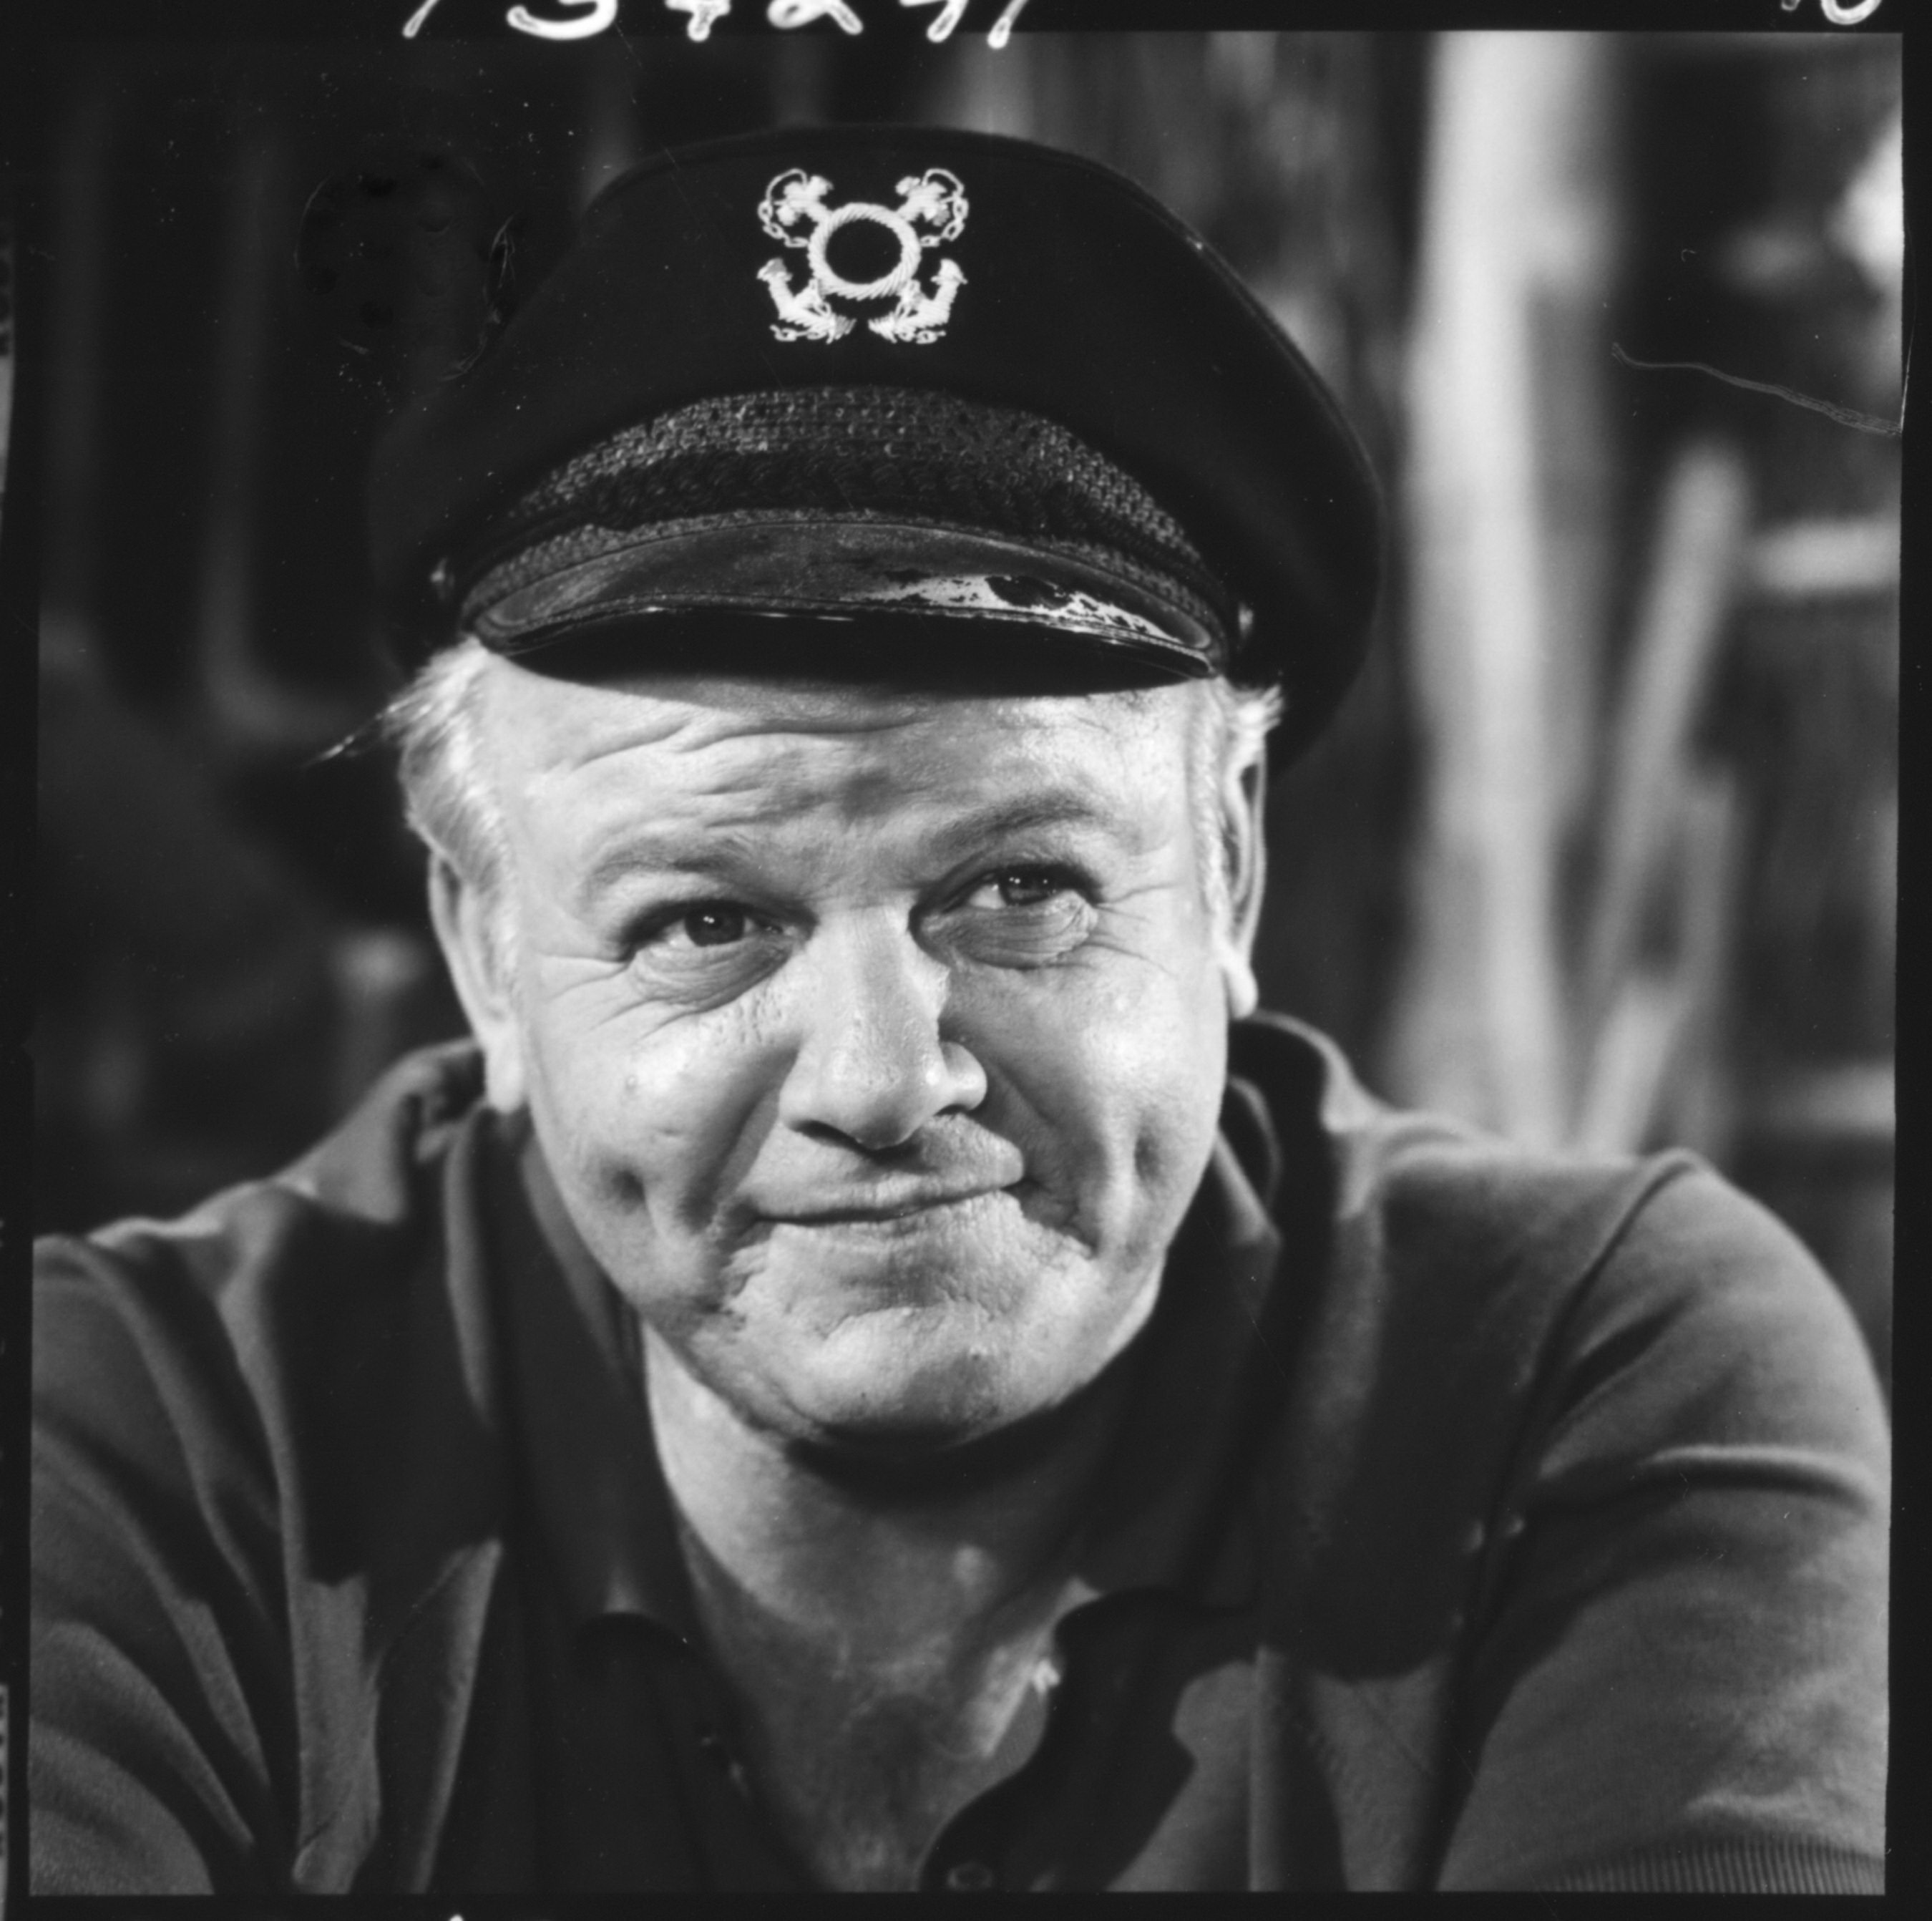  Alan Hale Jr. as the Skipper